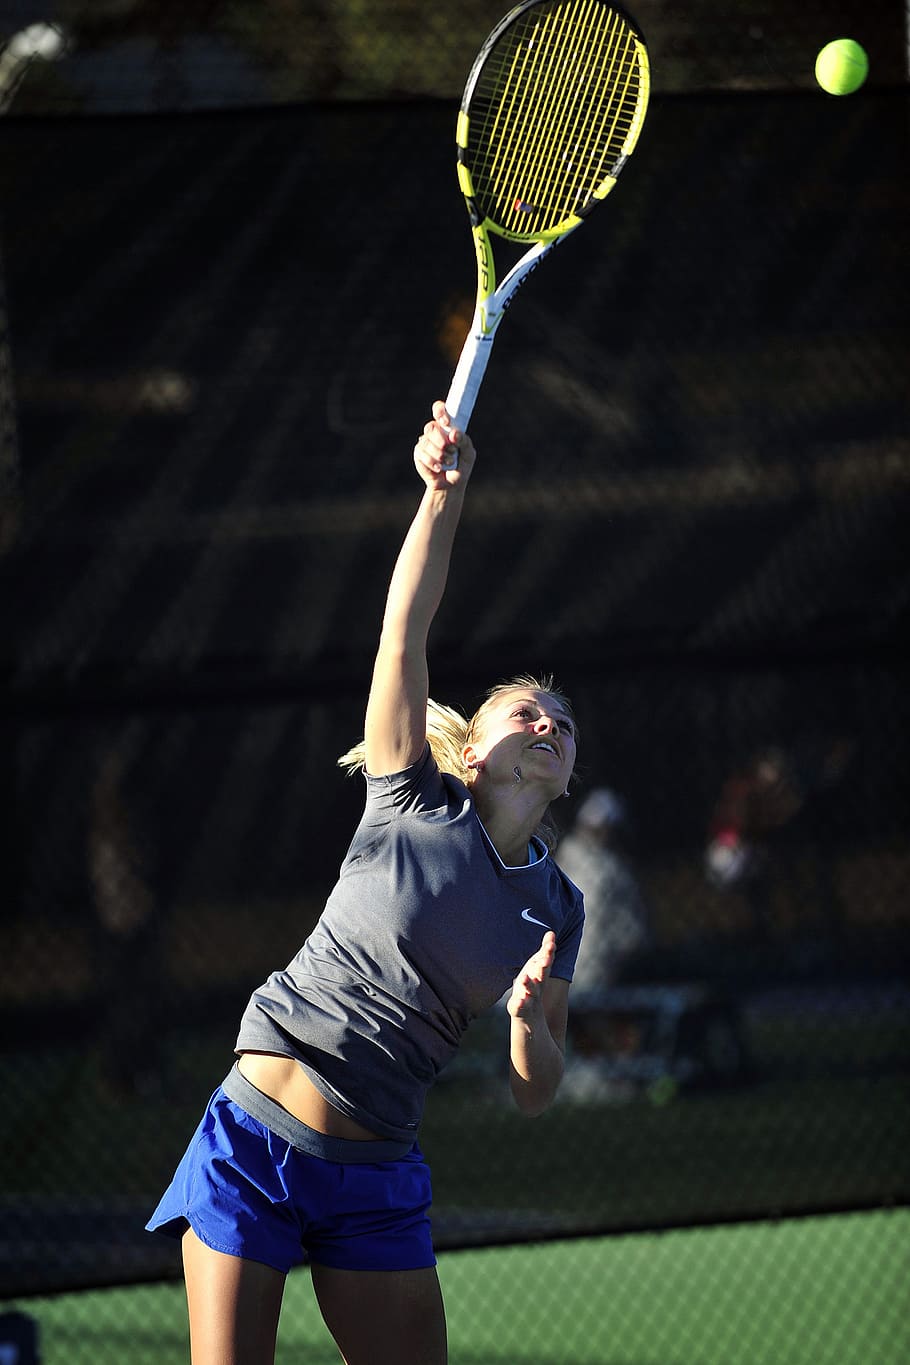 woman, going, hit, tennis ball, mid-air, tennis player, racket, sport, serve, court